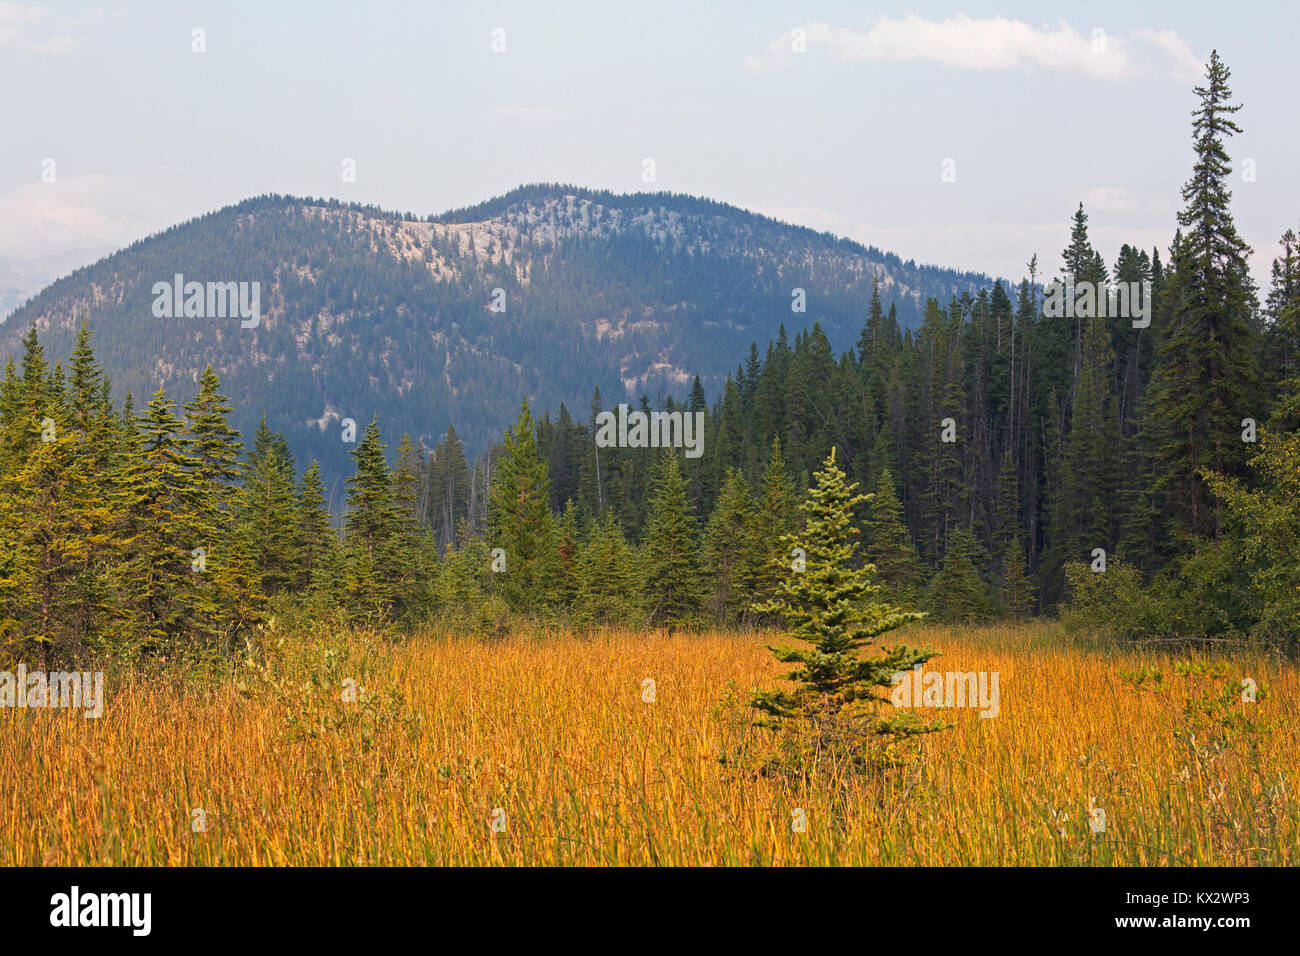 Marais entouré de forêts dans l'écosystème montagnard du parc national Banff, Canada Banque D'Images